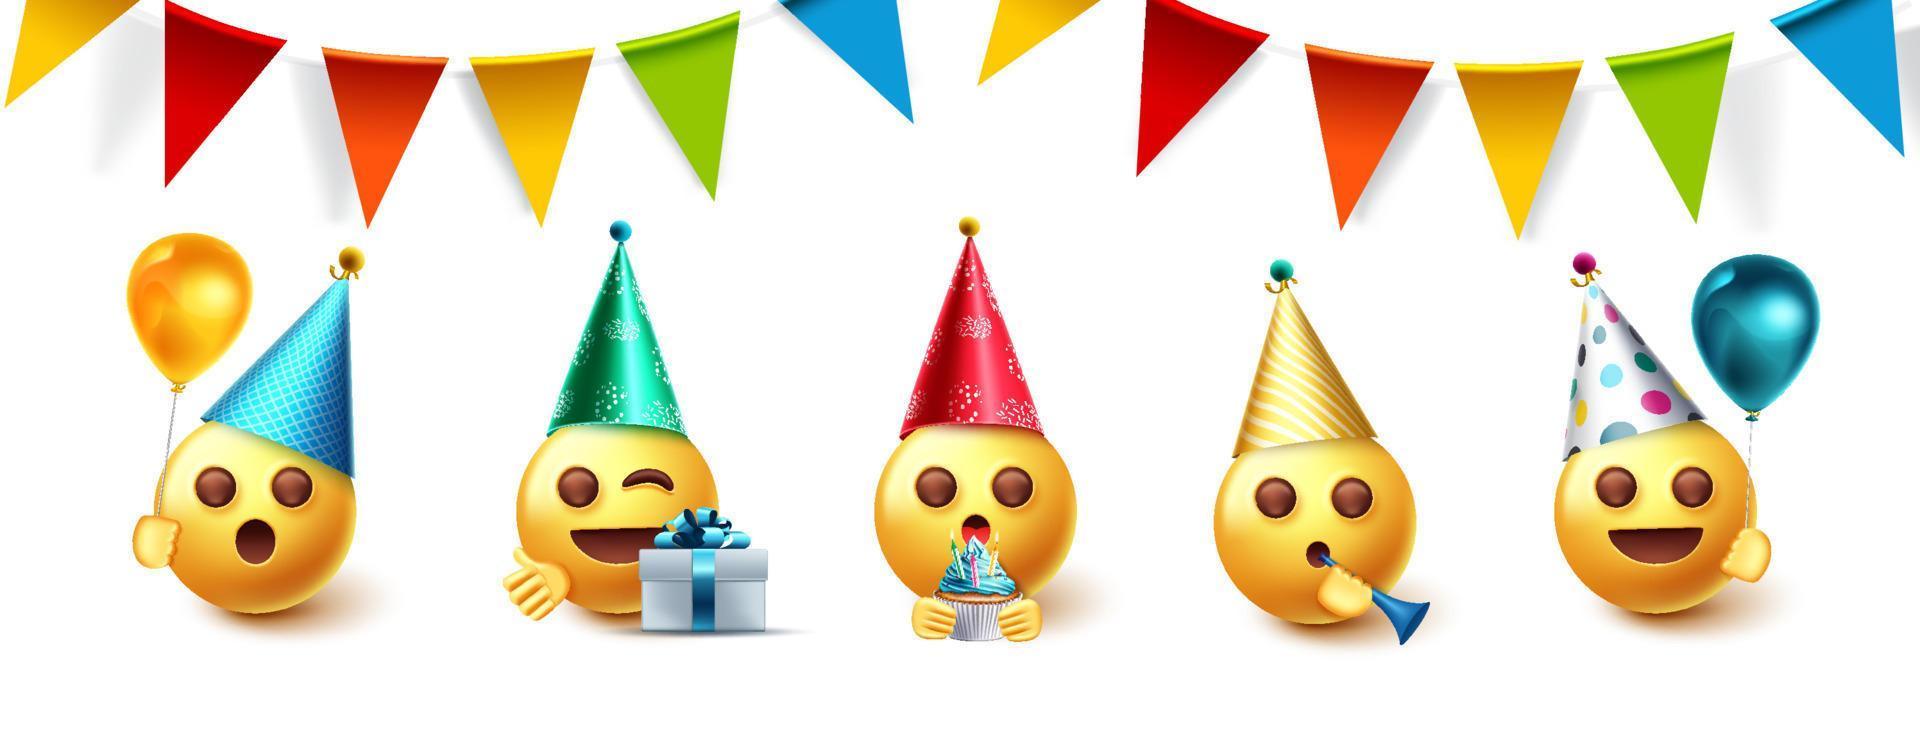 Conjunto de diseño de vector de fiesta de cumpleaños de emoji. colección de emojis en celebración de fiestas con banderines, globos y sombreros que celebran elementos para la colección de emoticonos del día del nacimiento. ilustración vectorial.